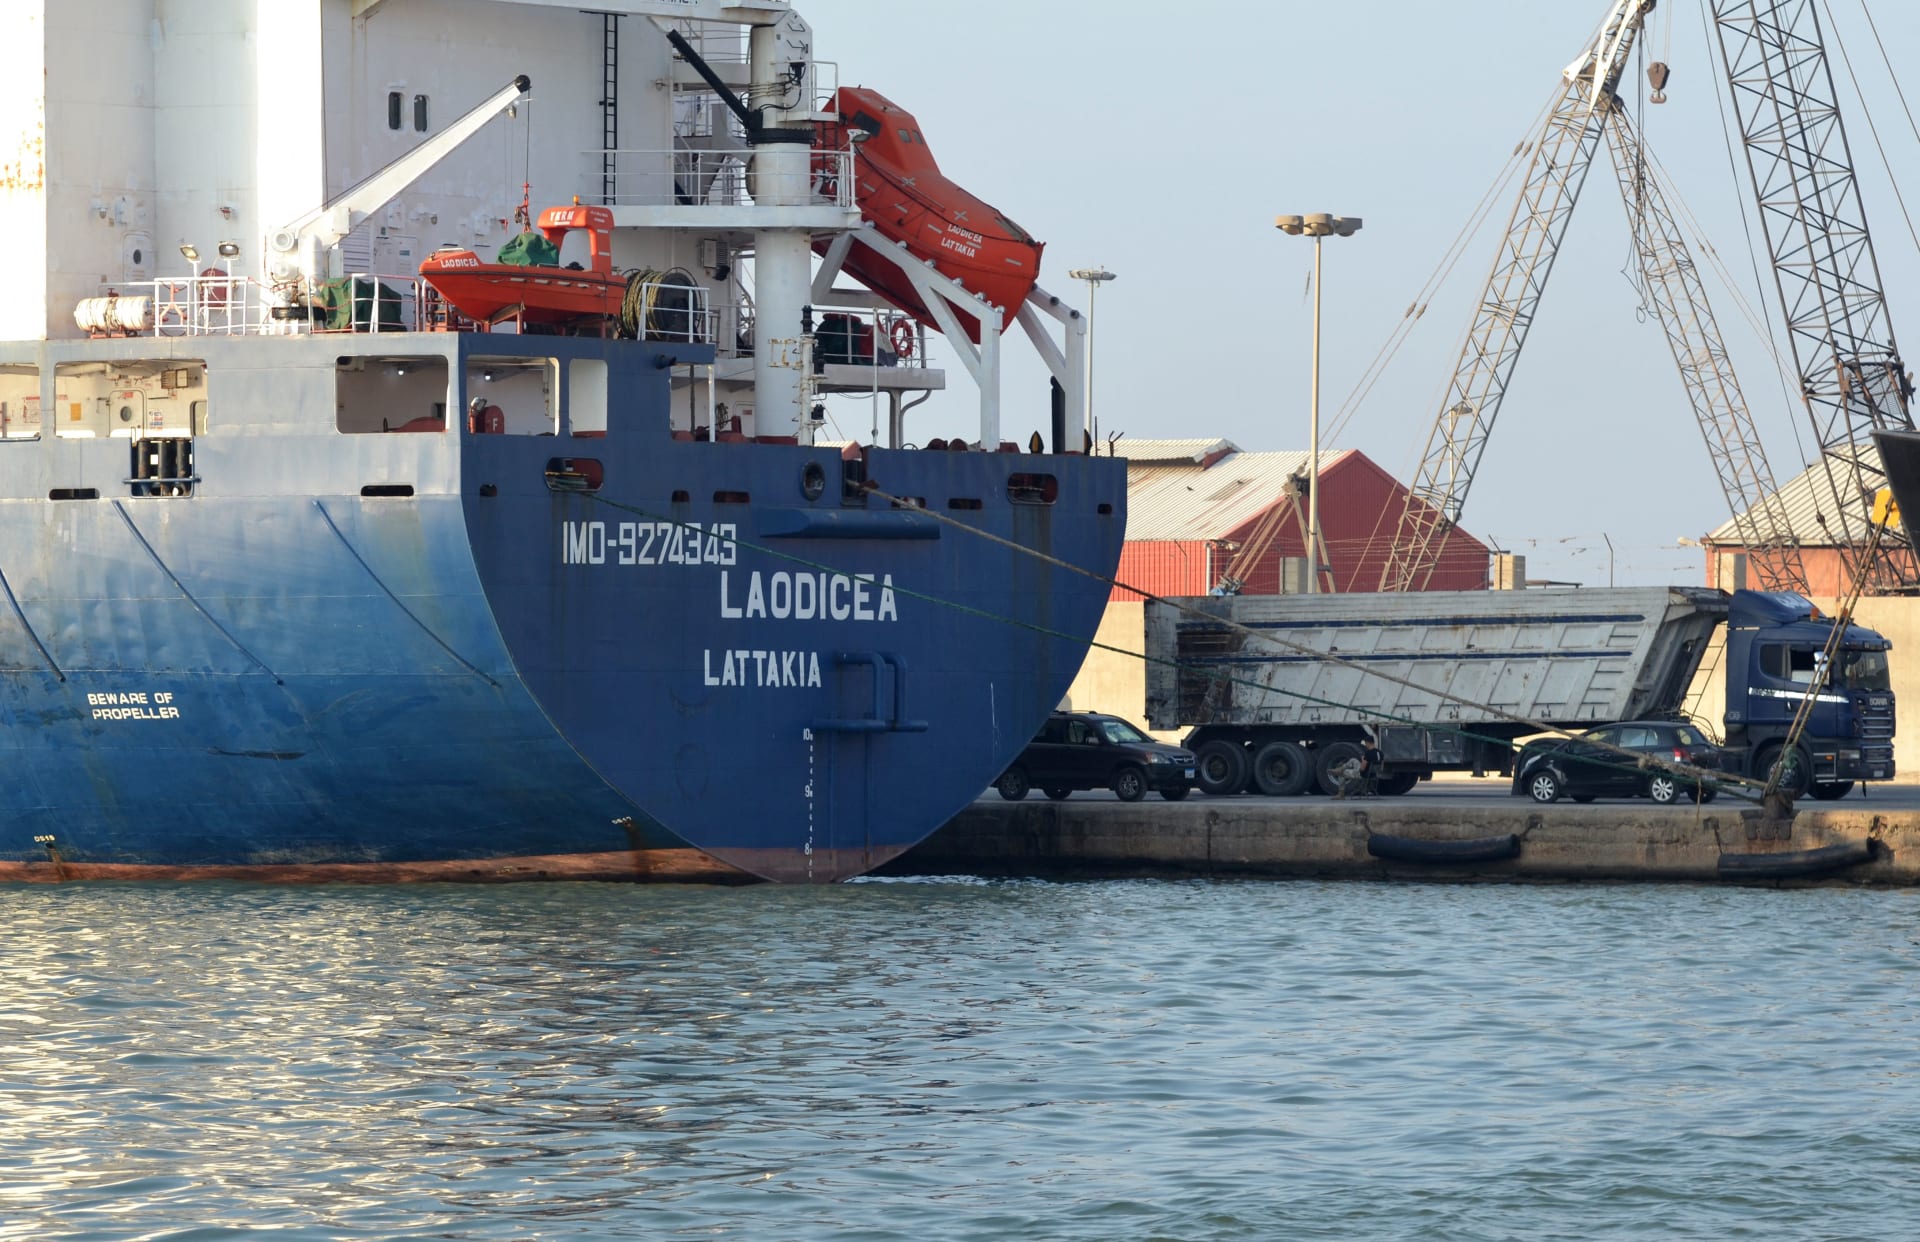 سوريا تُعلن وصول السفينة "لاوديسيا" إلى طرطوس.. وأوكرانيا تعرب عن خيبة أملها وتخذر لبنان